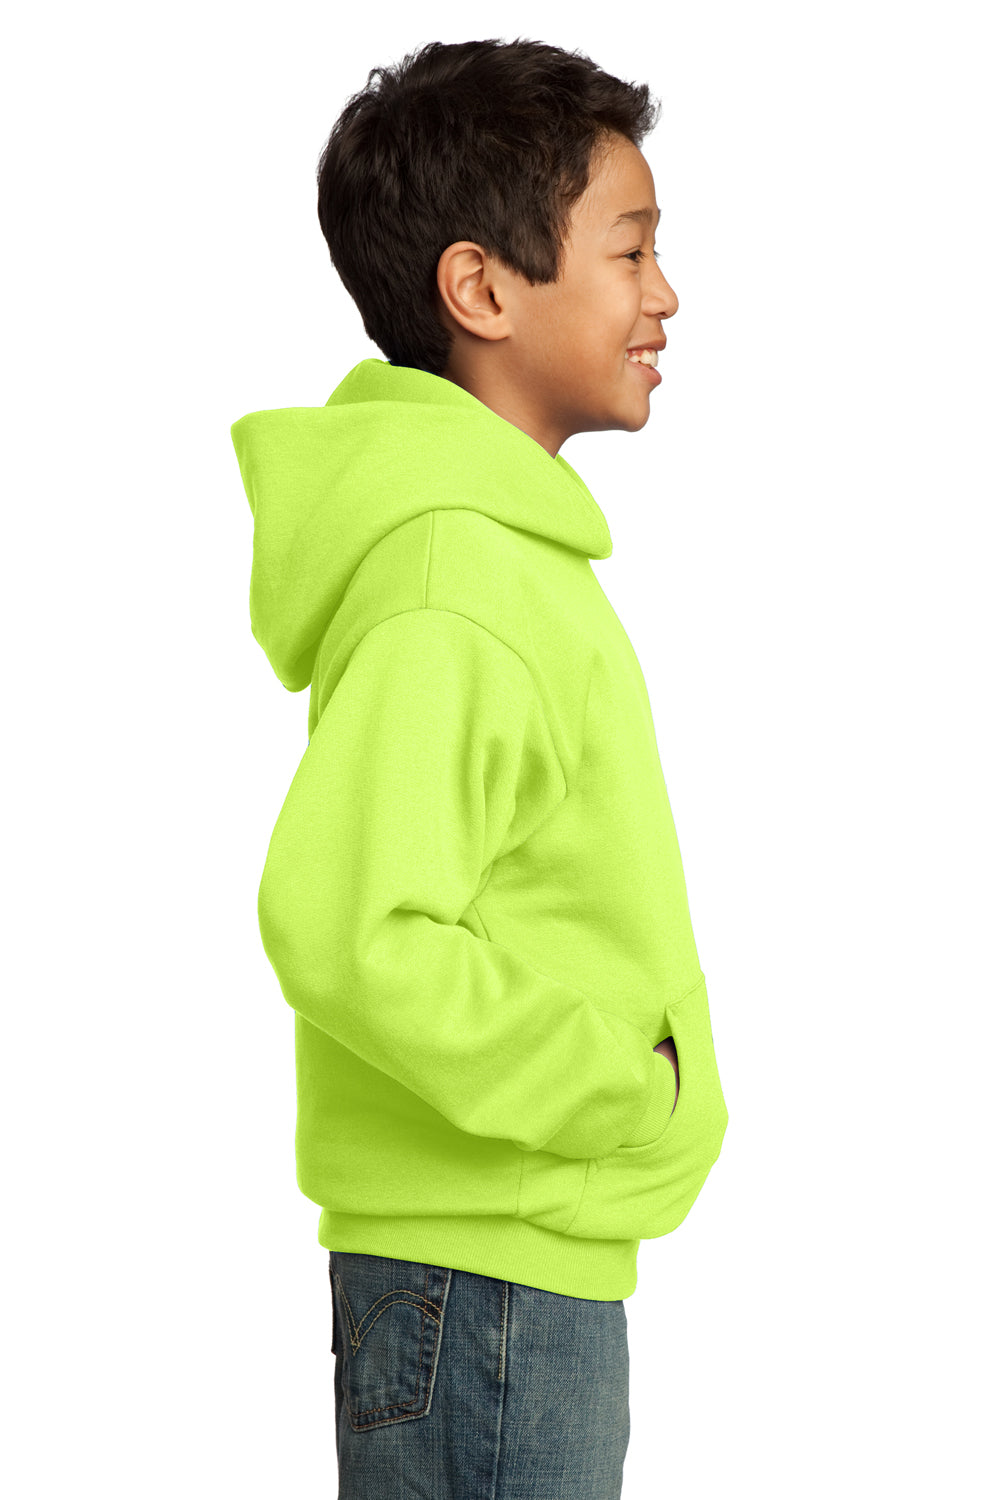 Port & Company PC90YH Youth Core Fleece Hooded Sweatshirt Hoodie Neon Yellow Side